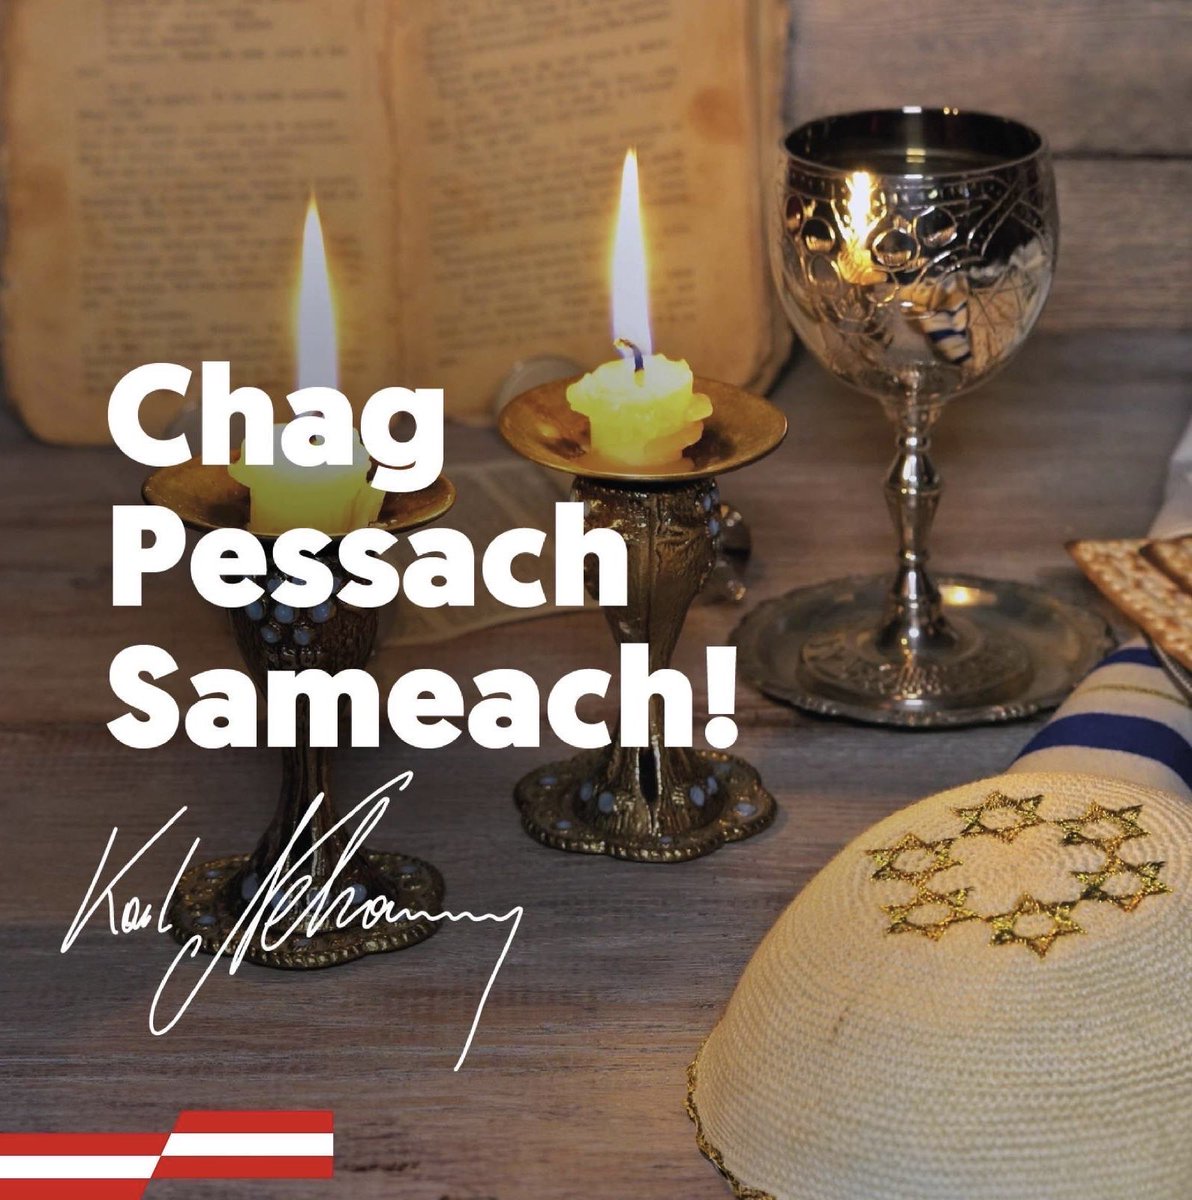 Ich wünsche allen Jüdinnen und Juden ein frohes Pessach-Fest. Das Fest erinnert an die Befreiung des jüdischen Volkes aus der Sklaverei sowie an den damit einhergehenden Auszug aus Ägypten. Chag Pessach Sameach!